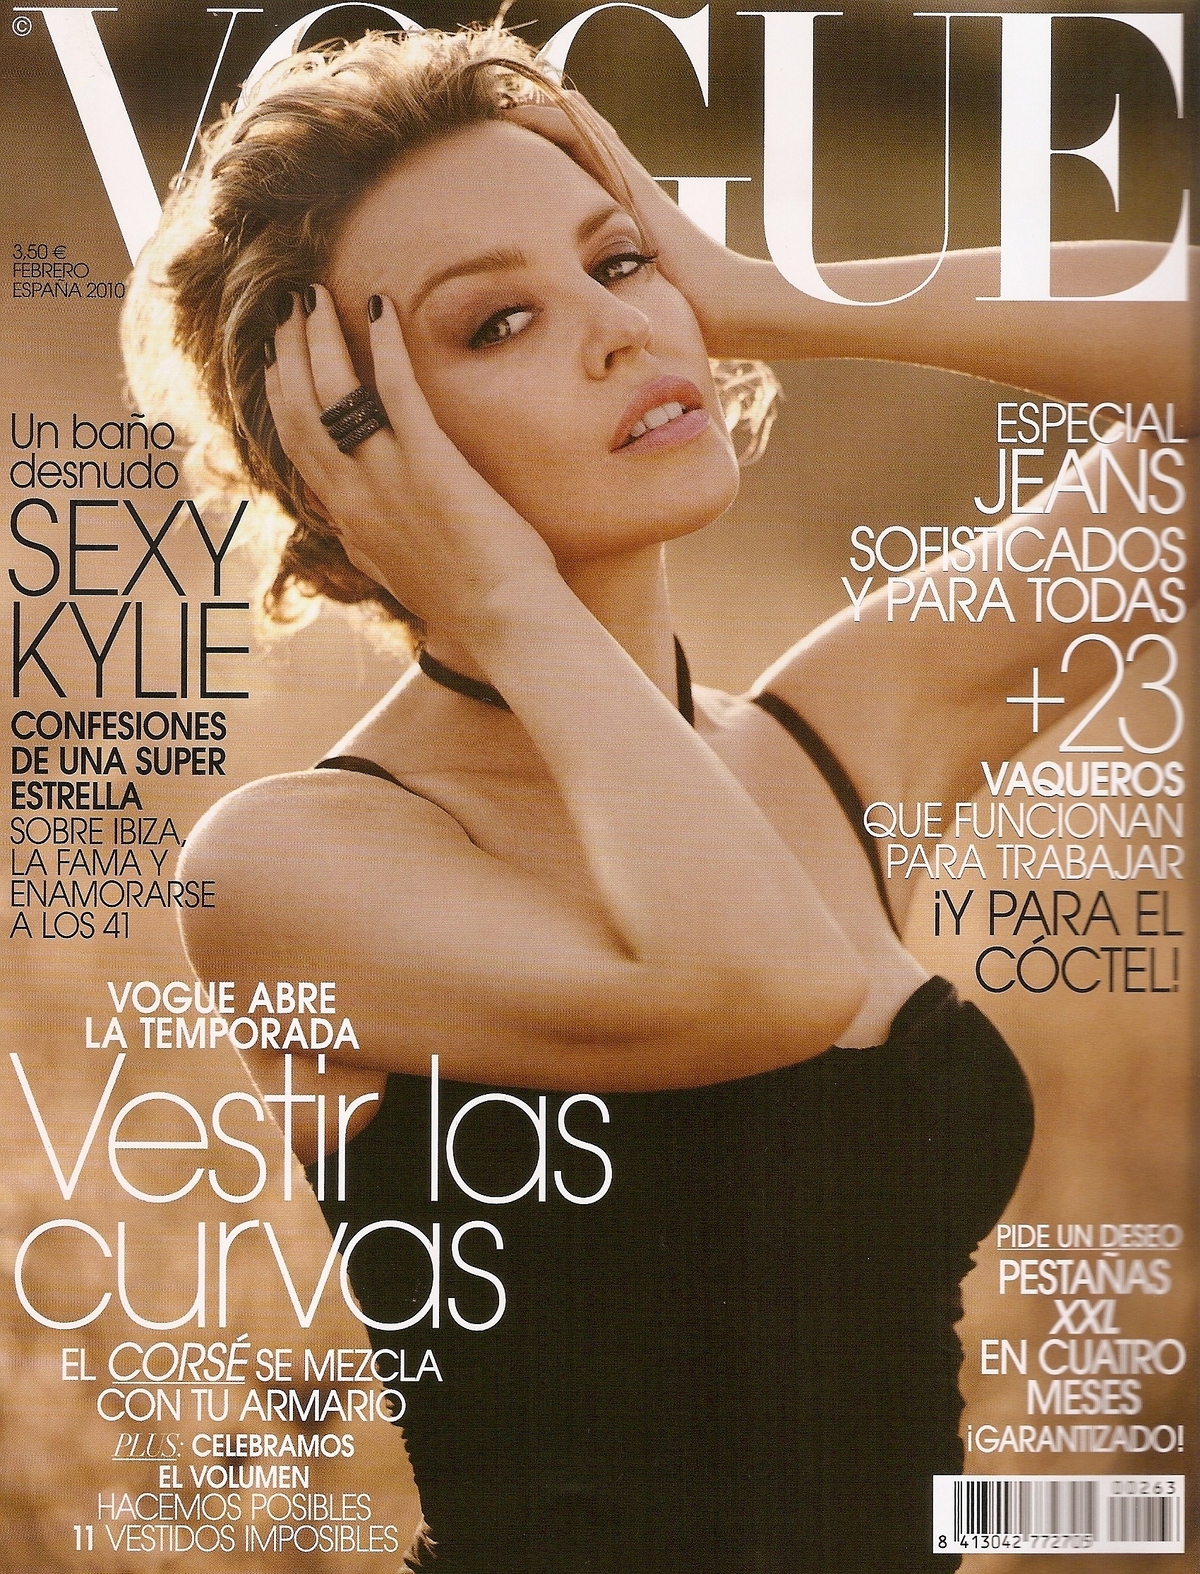 Кайли Миноуг в журнале Vogue. Испания. Февраль 2010